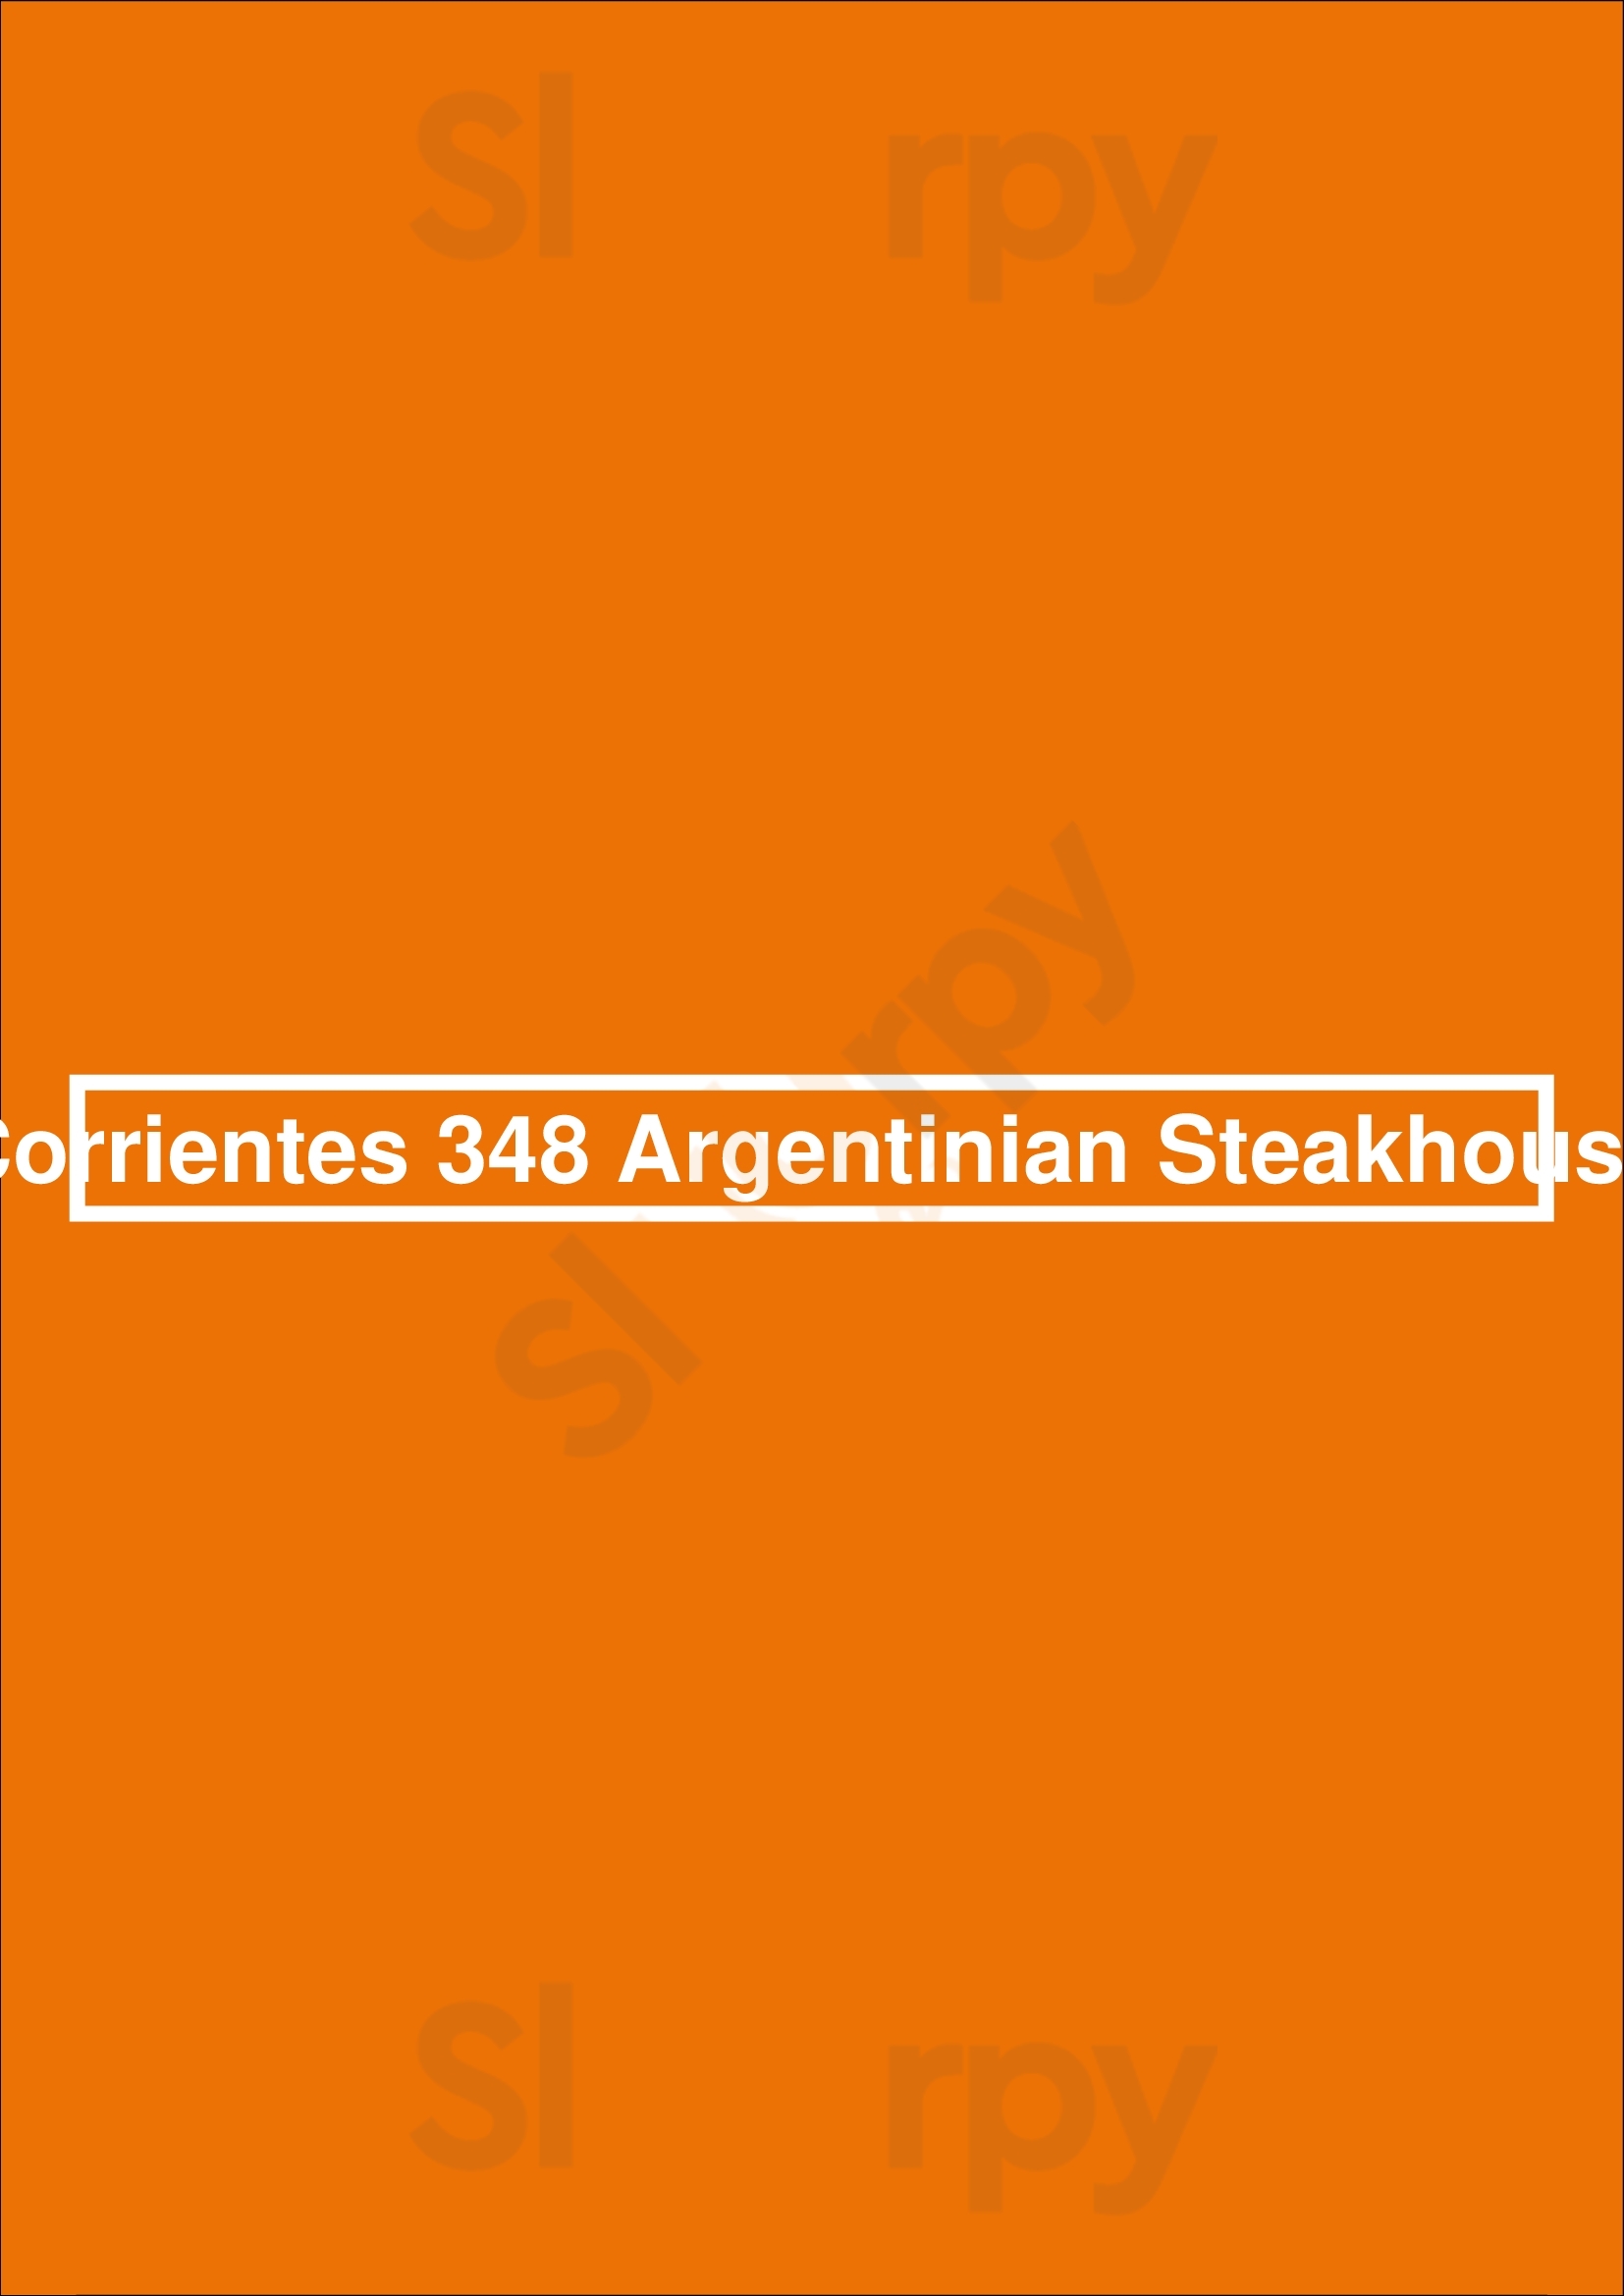 Corrientes 348 Argentinian Steakhouse Dallas Menu - 1